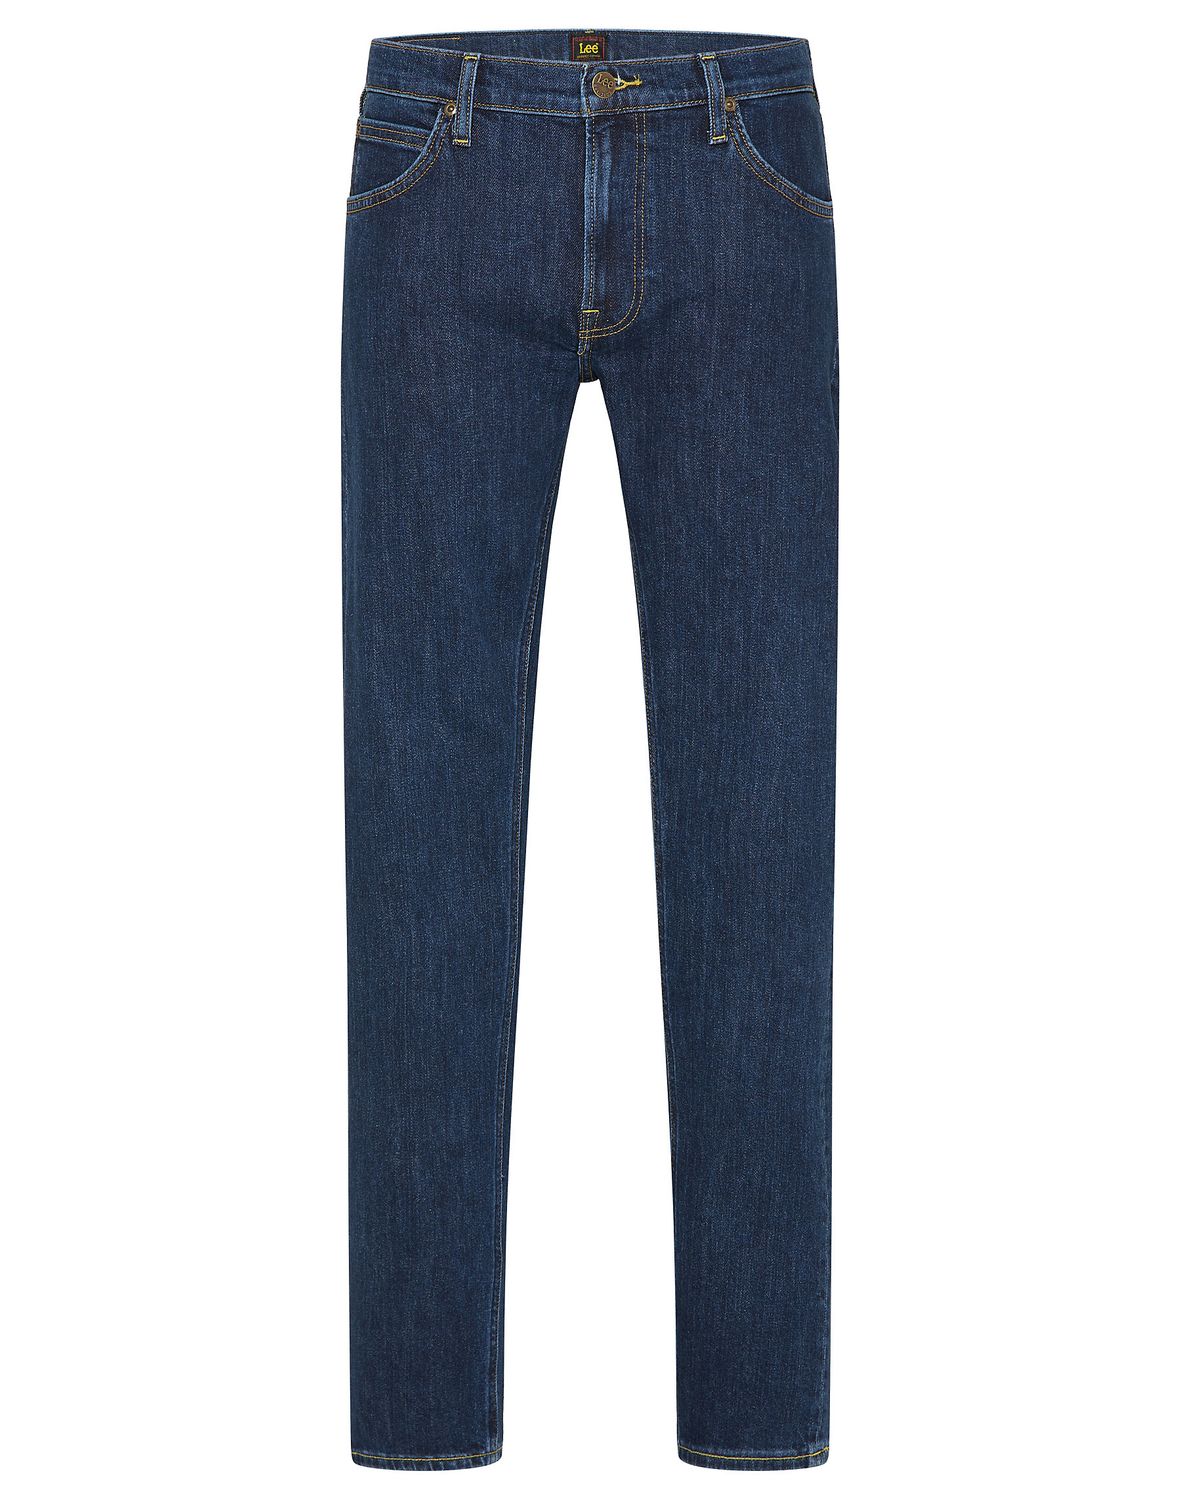 Джинсы Lee DAREN ZIP FLY regular/straight, синий мужские джинсы с 5 карманами daren zip lee индиго